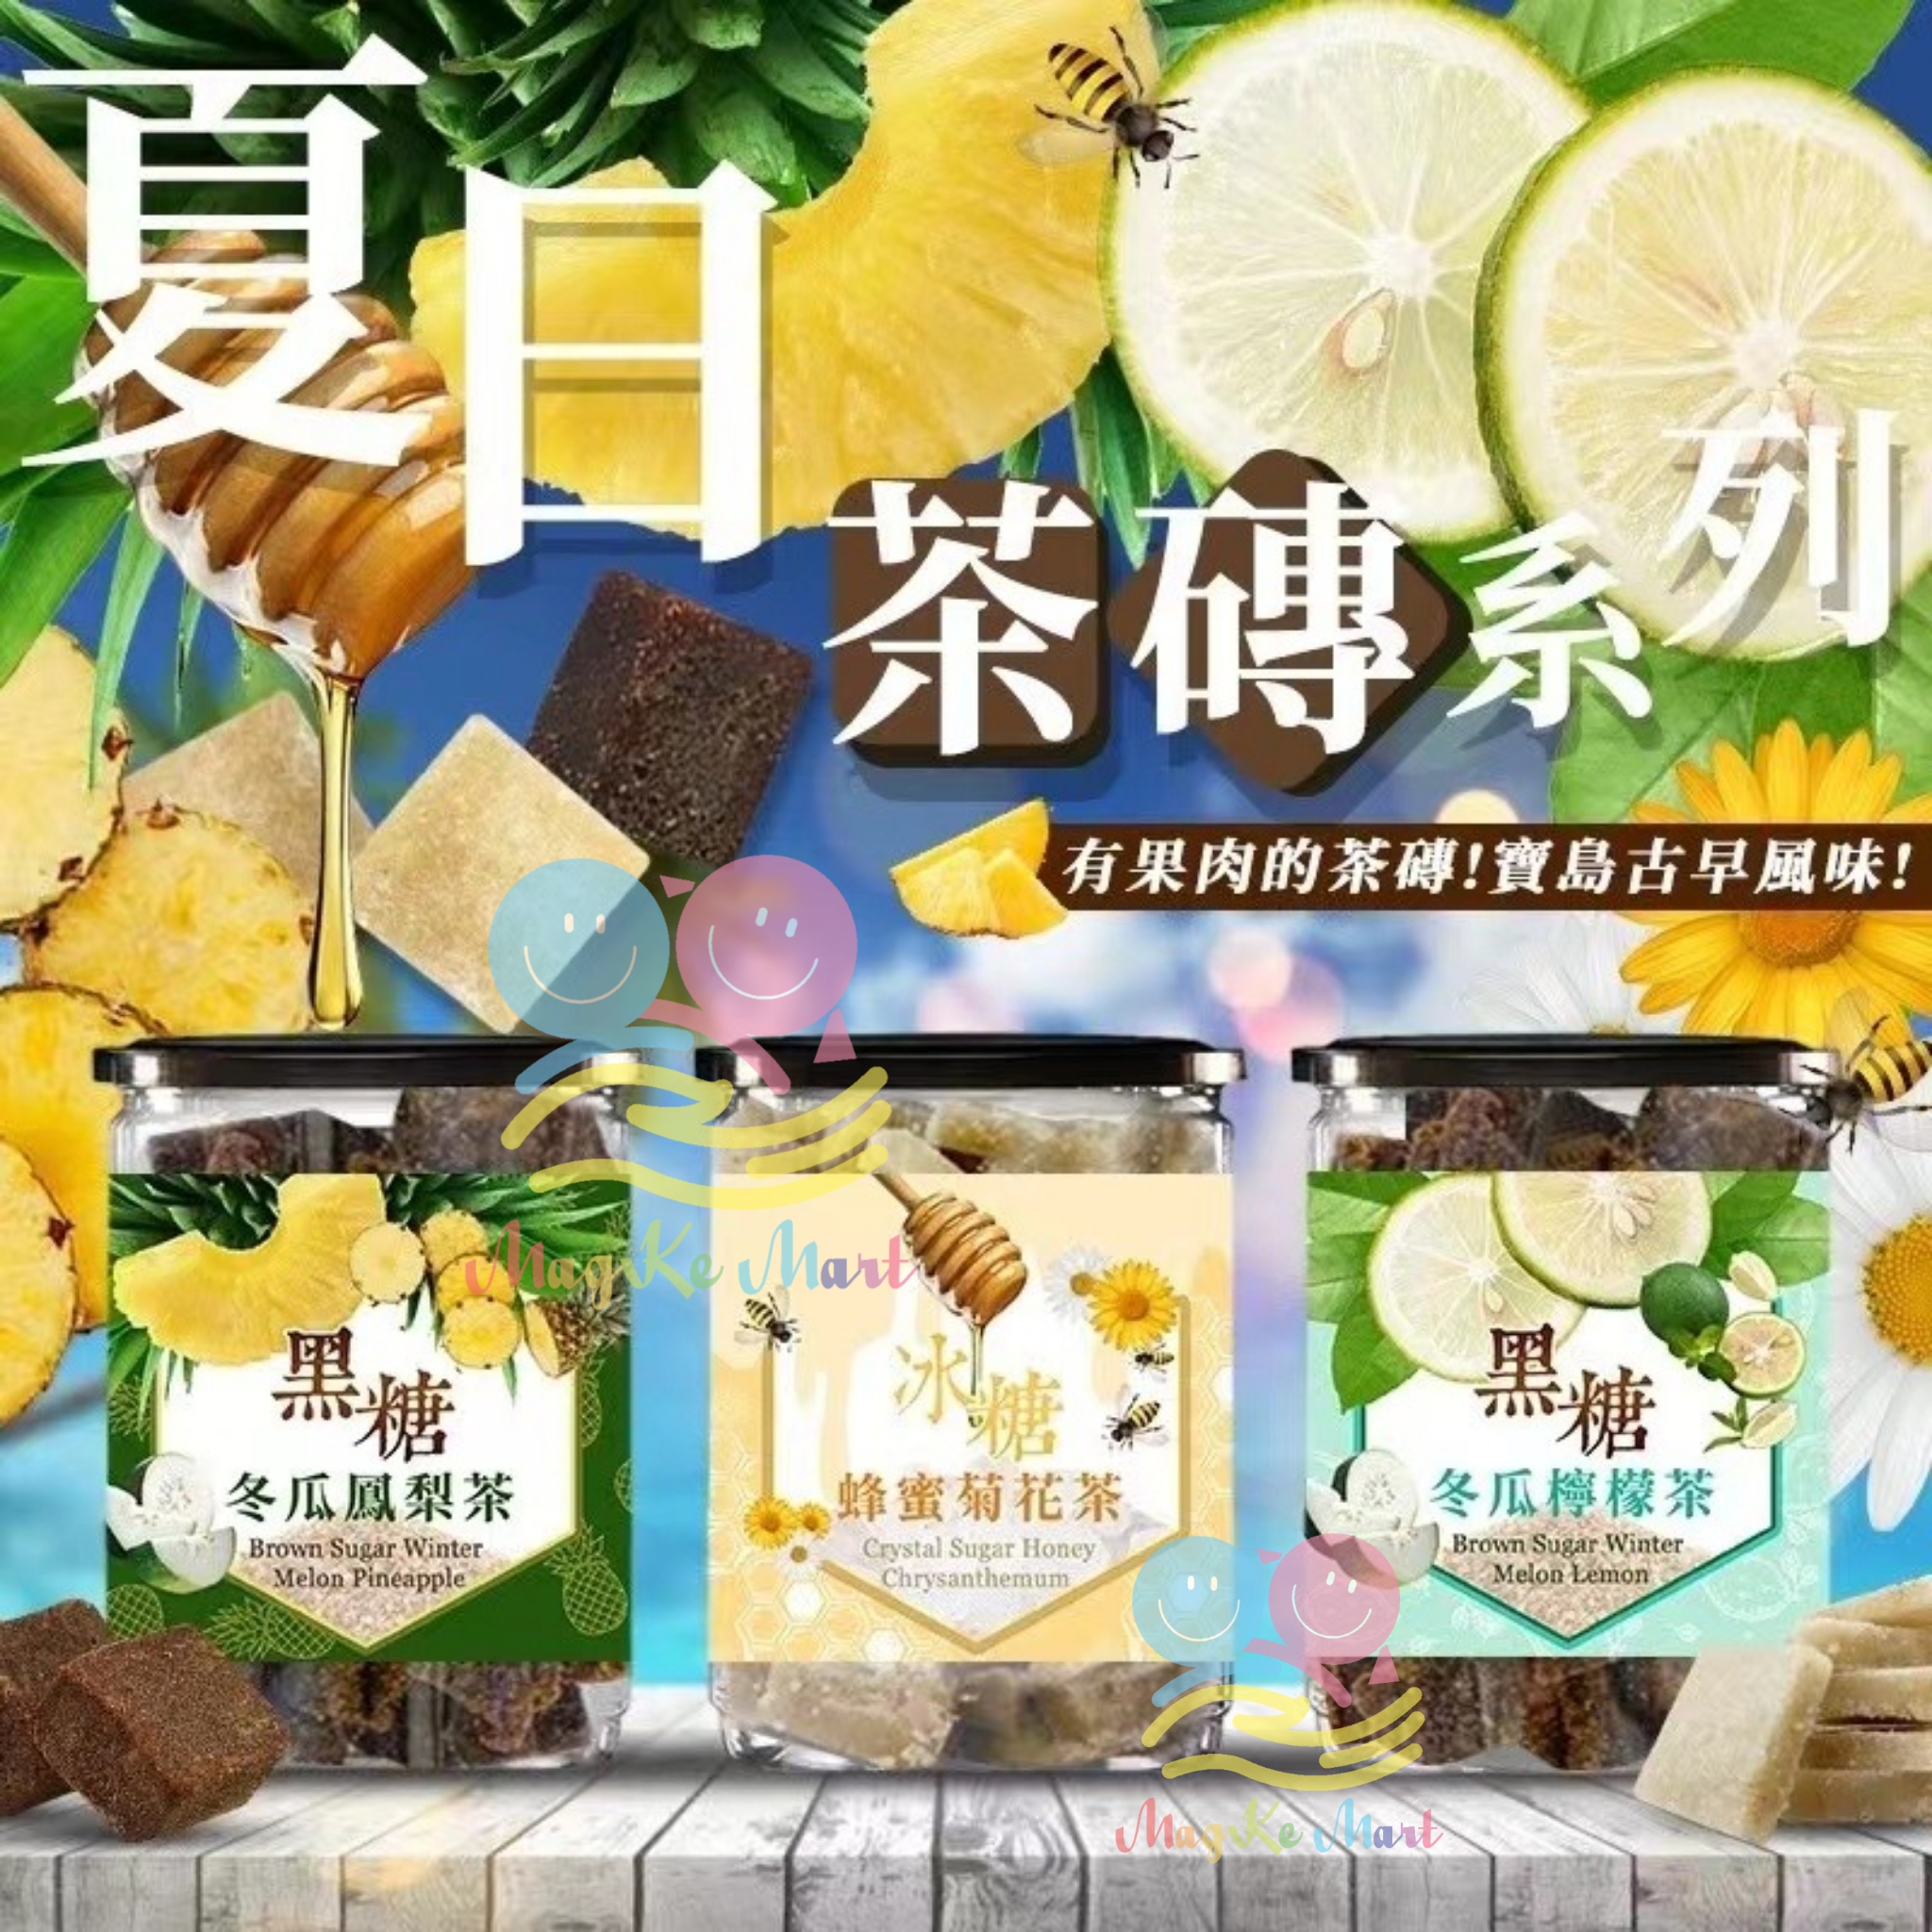 台灣億品鄉夏日茶磚系列 300g